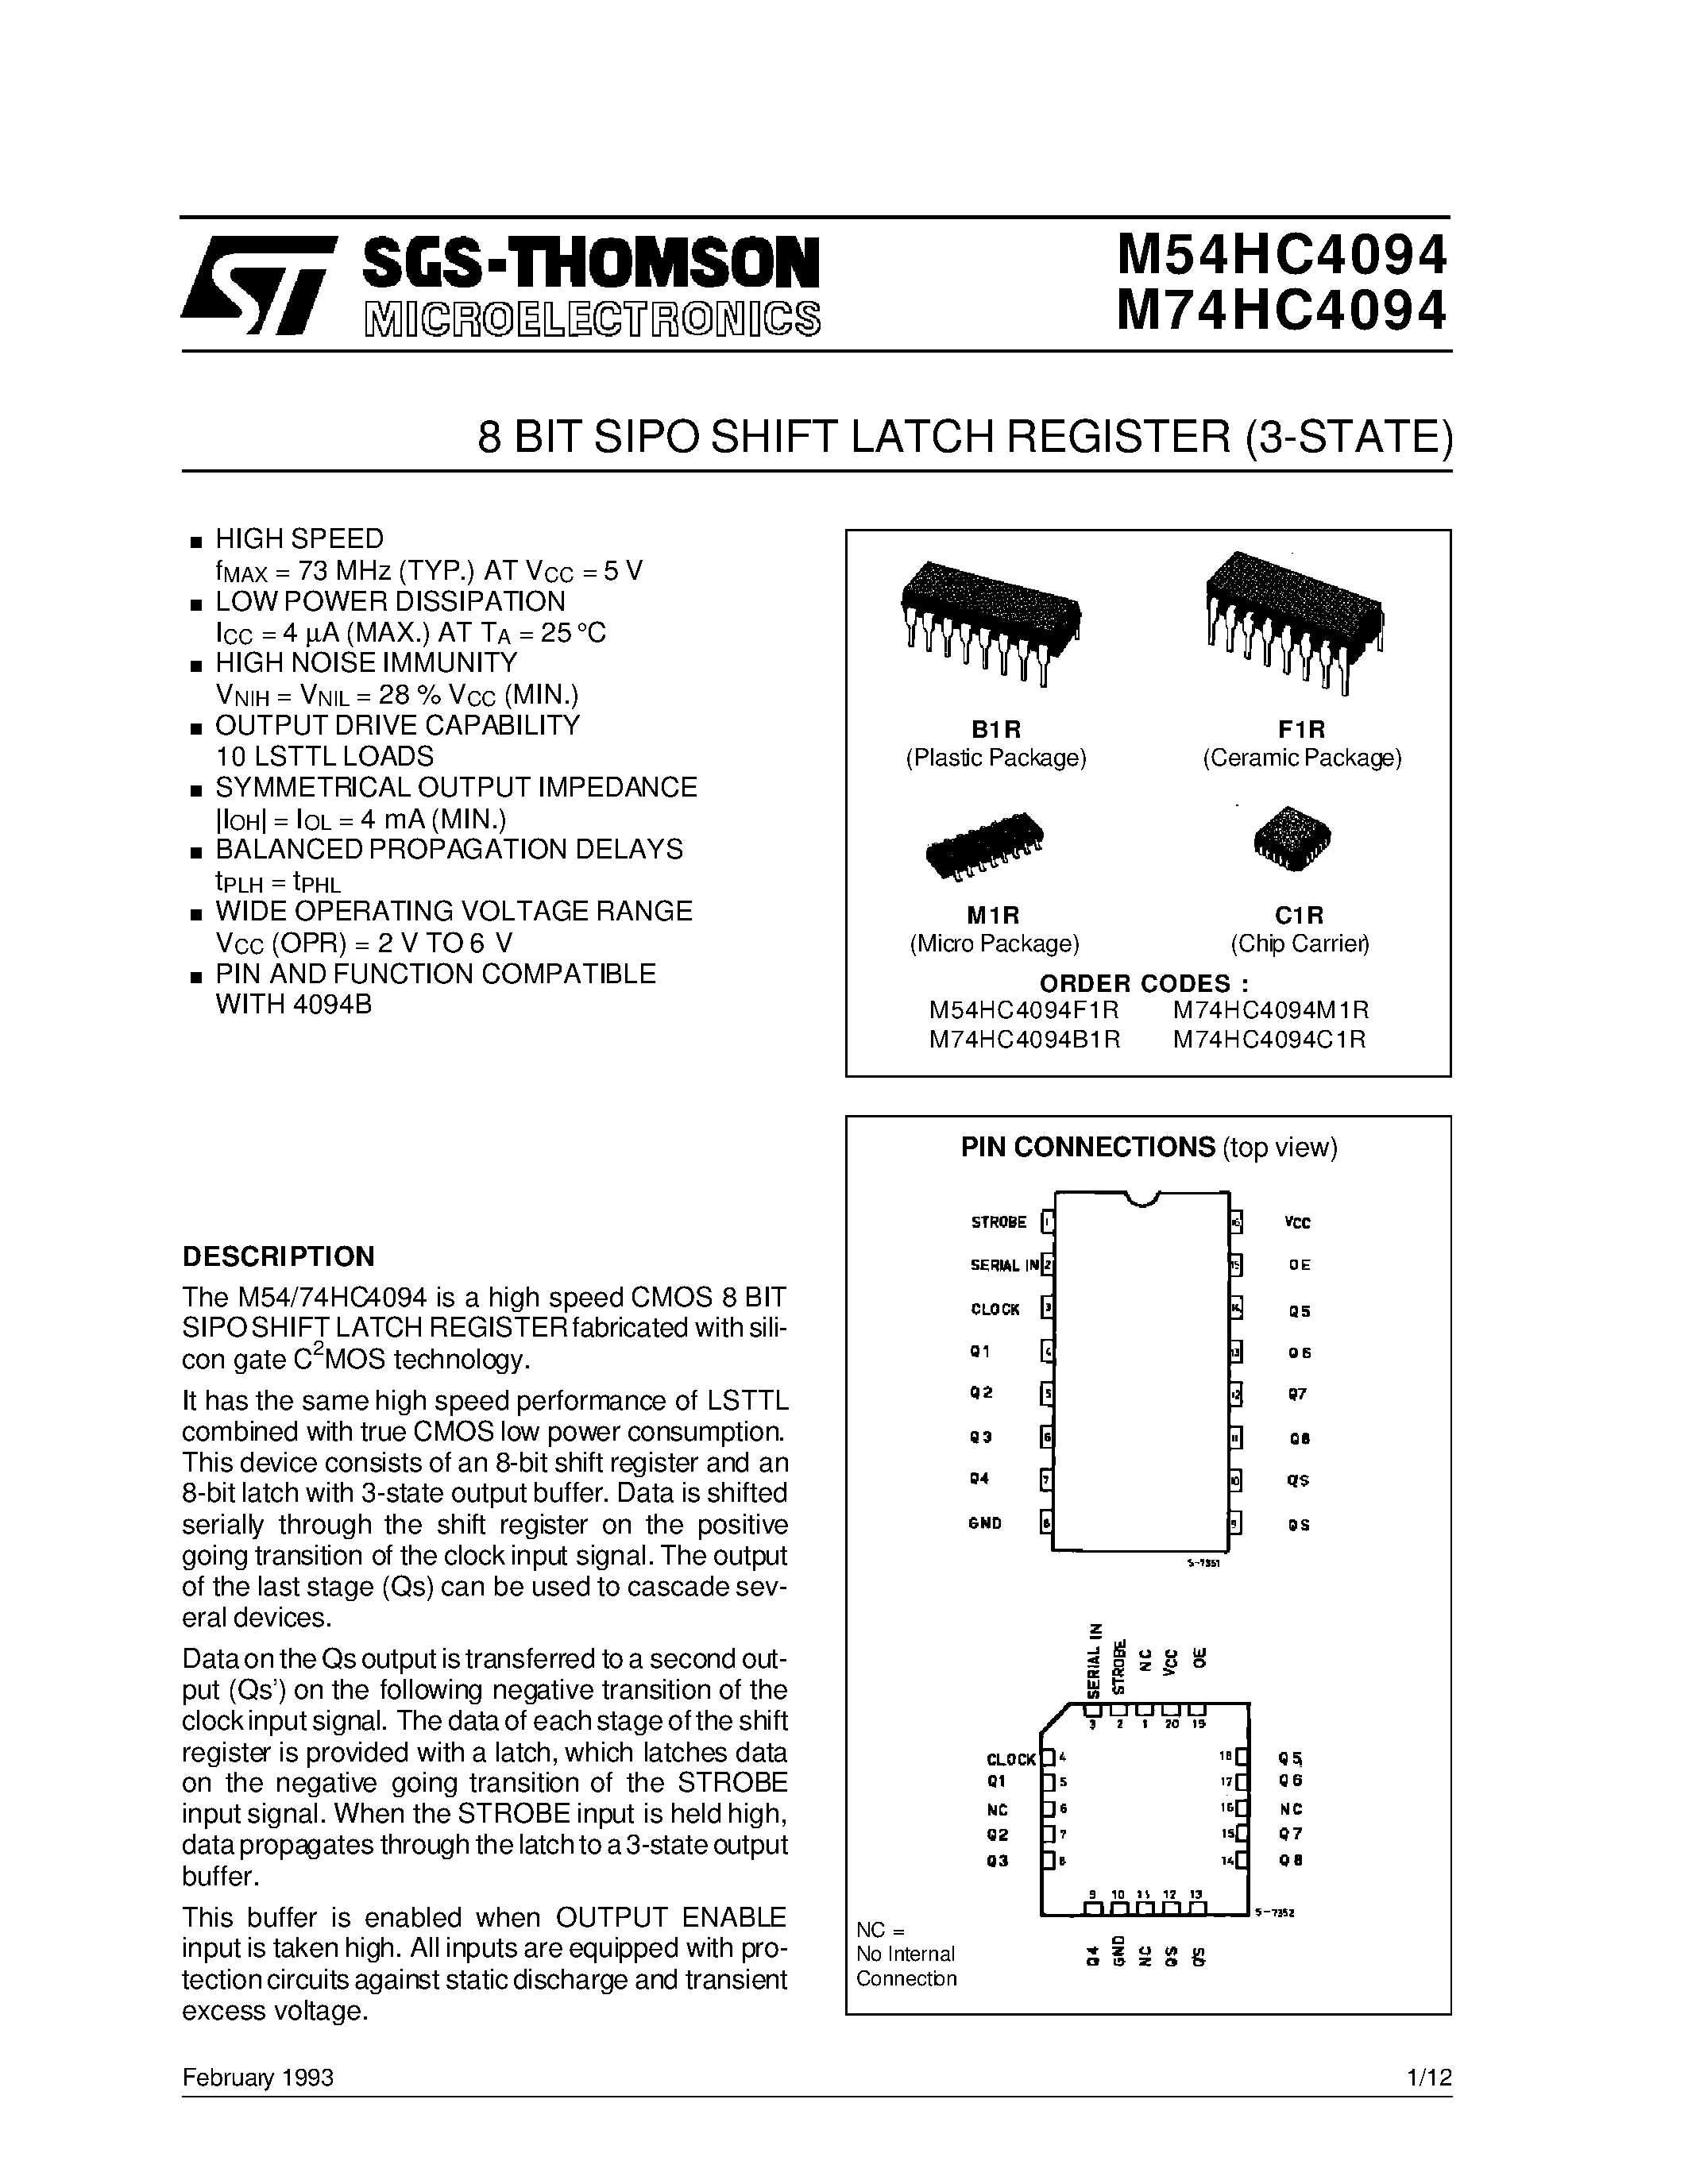 Datasheet M74HC4094 - 8 BIT SIPO SHIFT LATCH REGISTER 3-STATE page 1